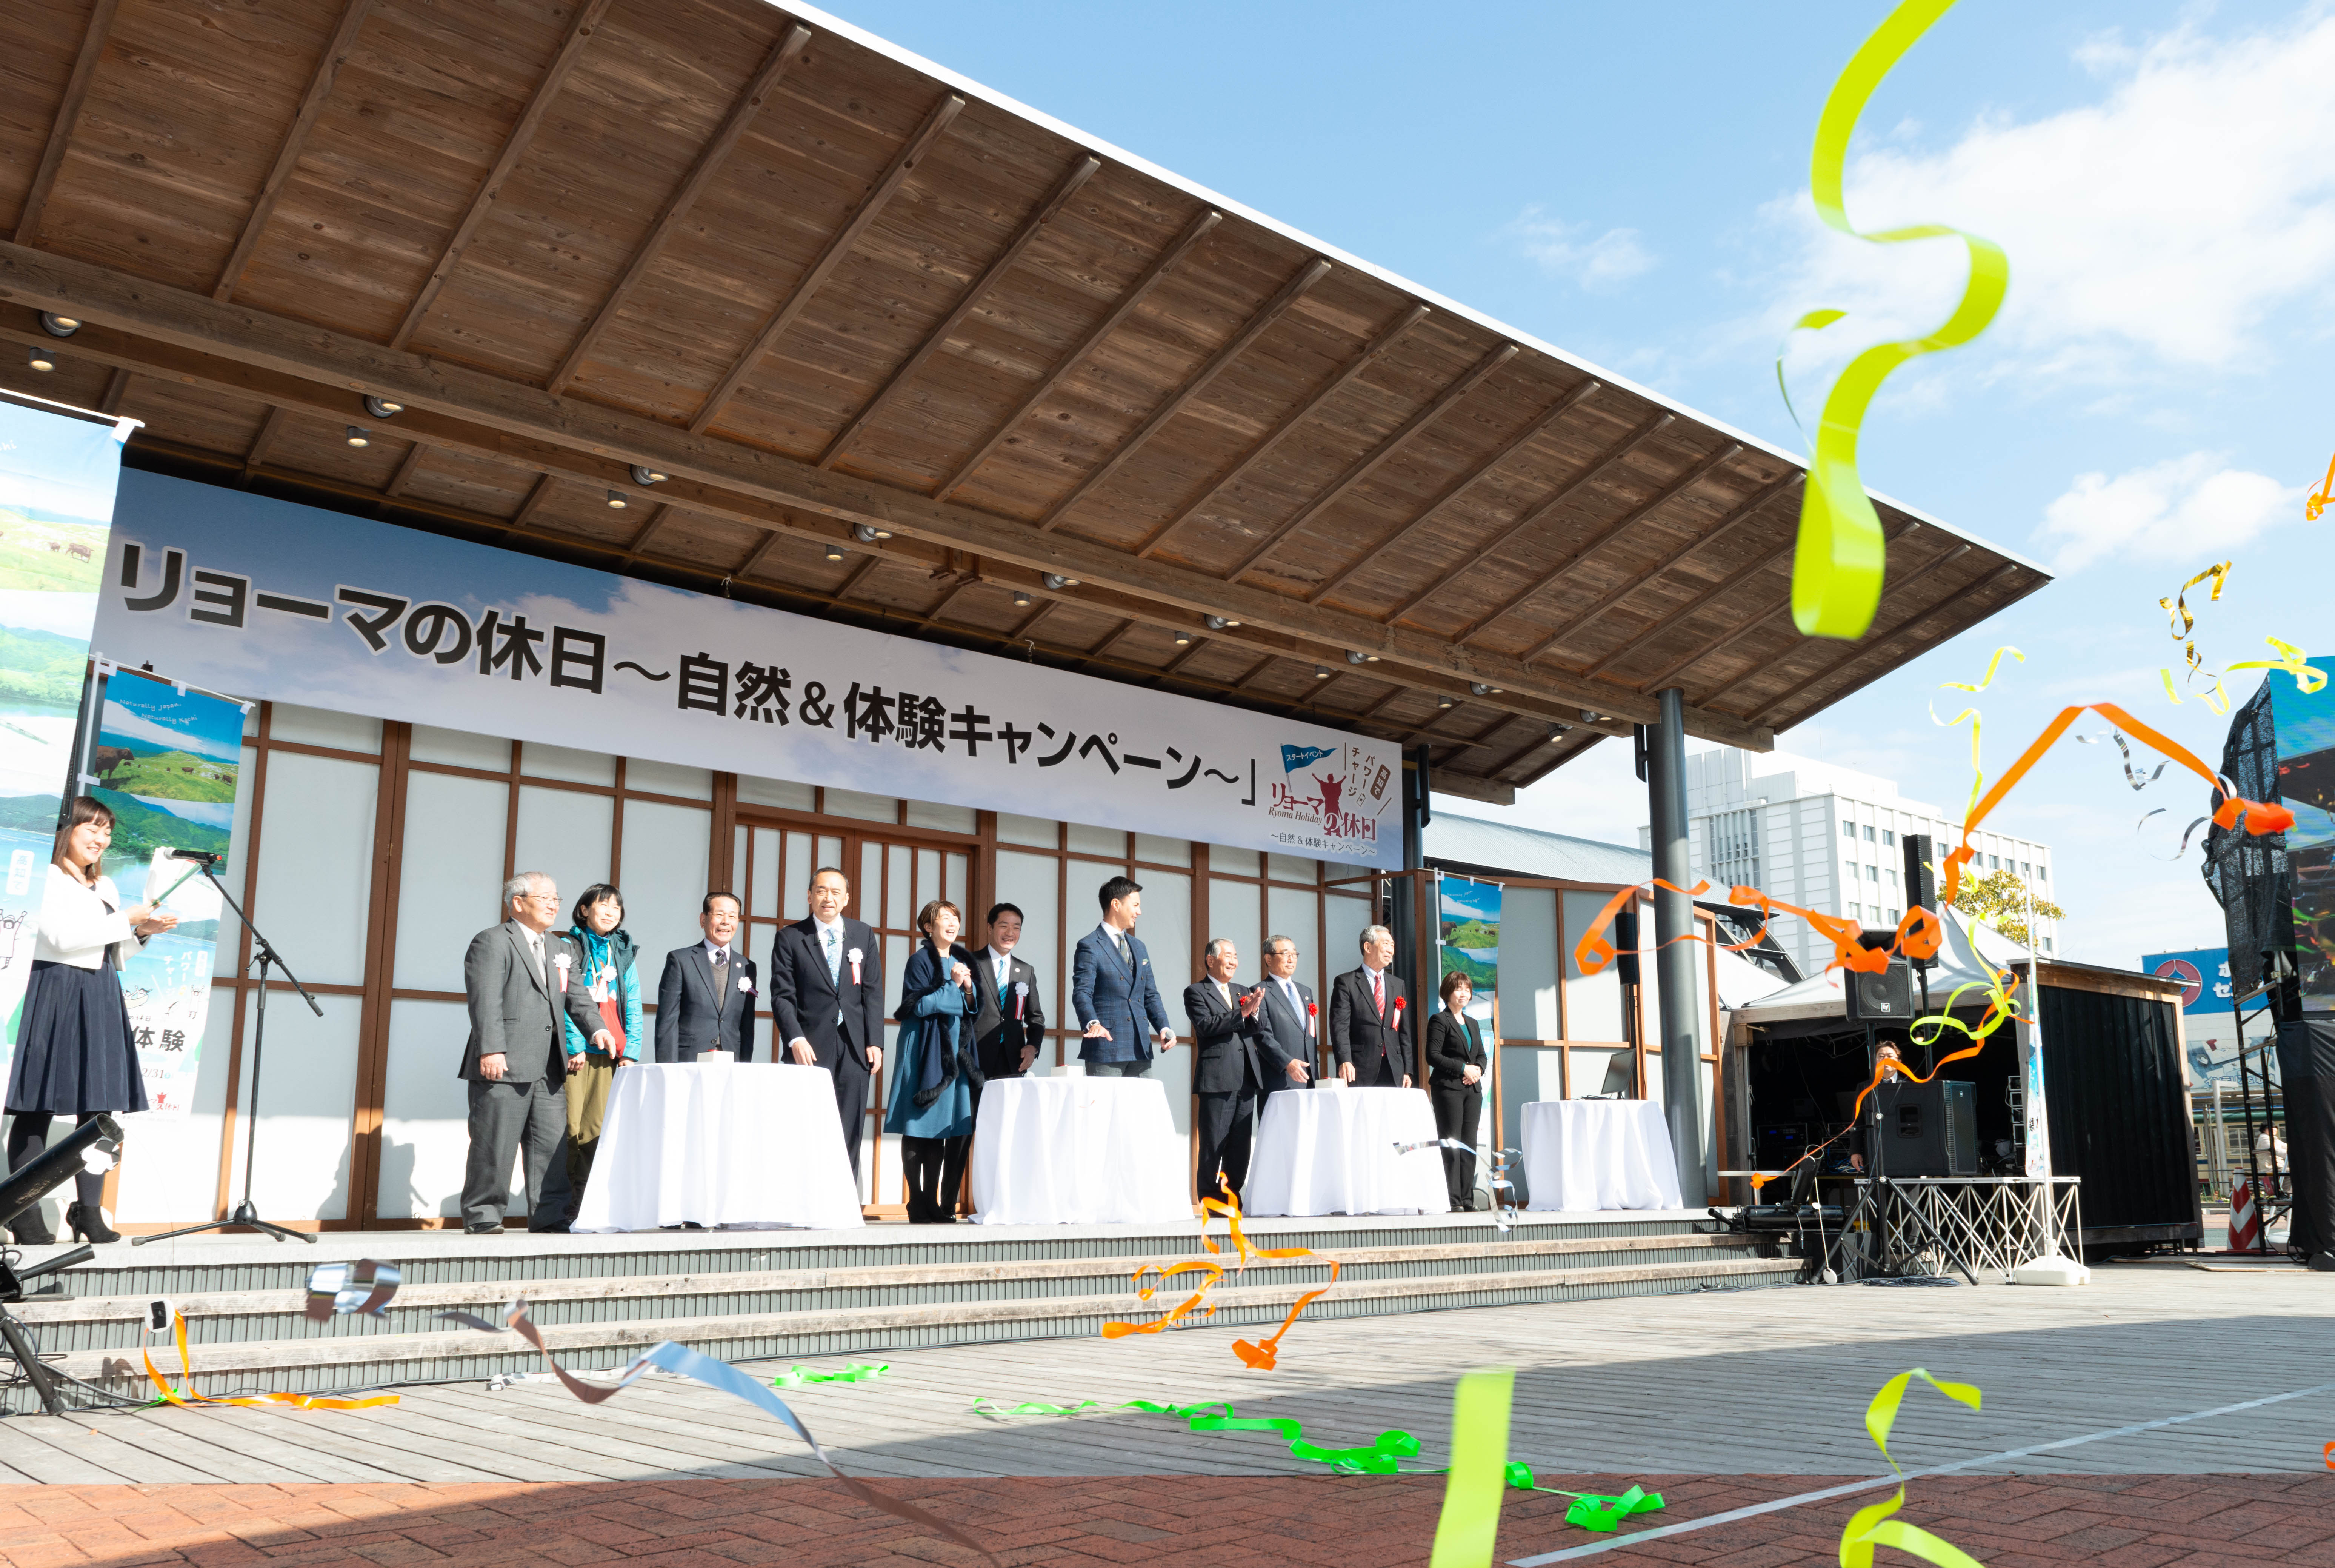 尾﨑知事、特別ゲストの中井美穂さん、ユージさん、ＡＮＡホールディングス代表取締役会長・伊東信一郎さんほか、来賓、関係者が一斉に祝砲のボタンを押した。